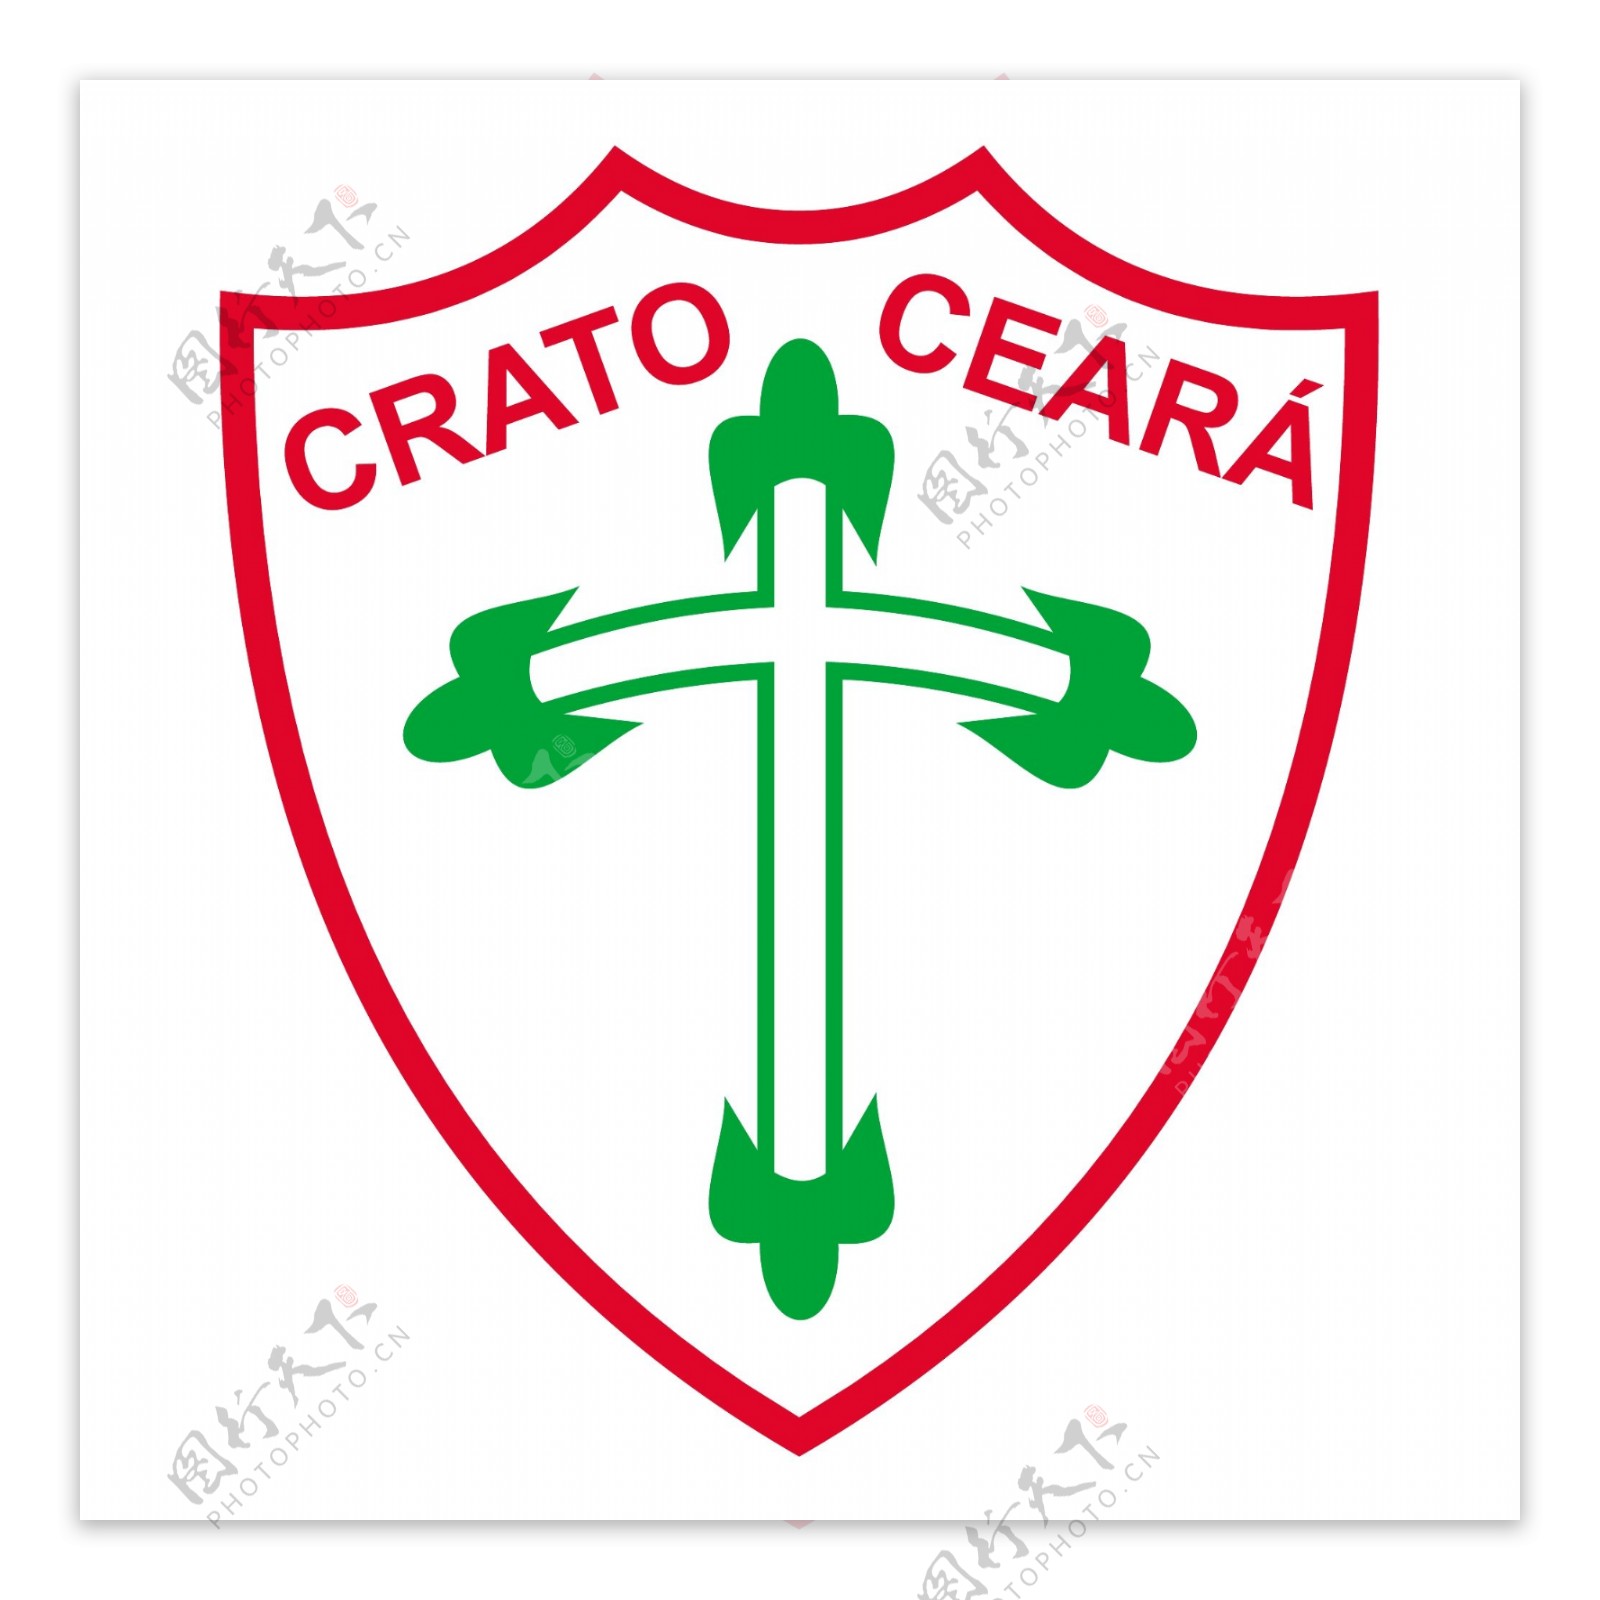 葡萄牙足球俱乐部德克拉图CE